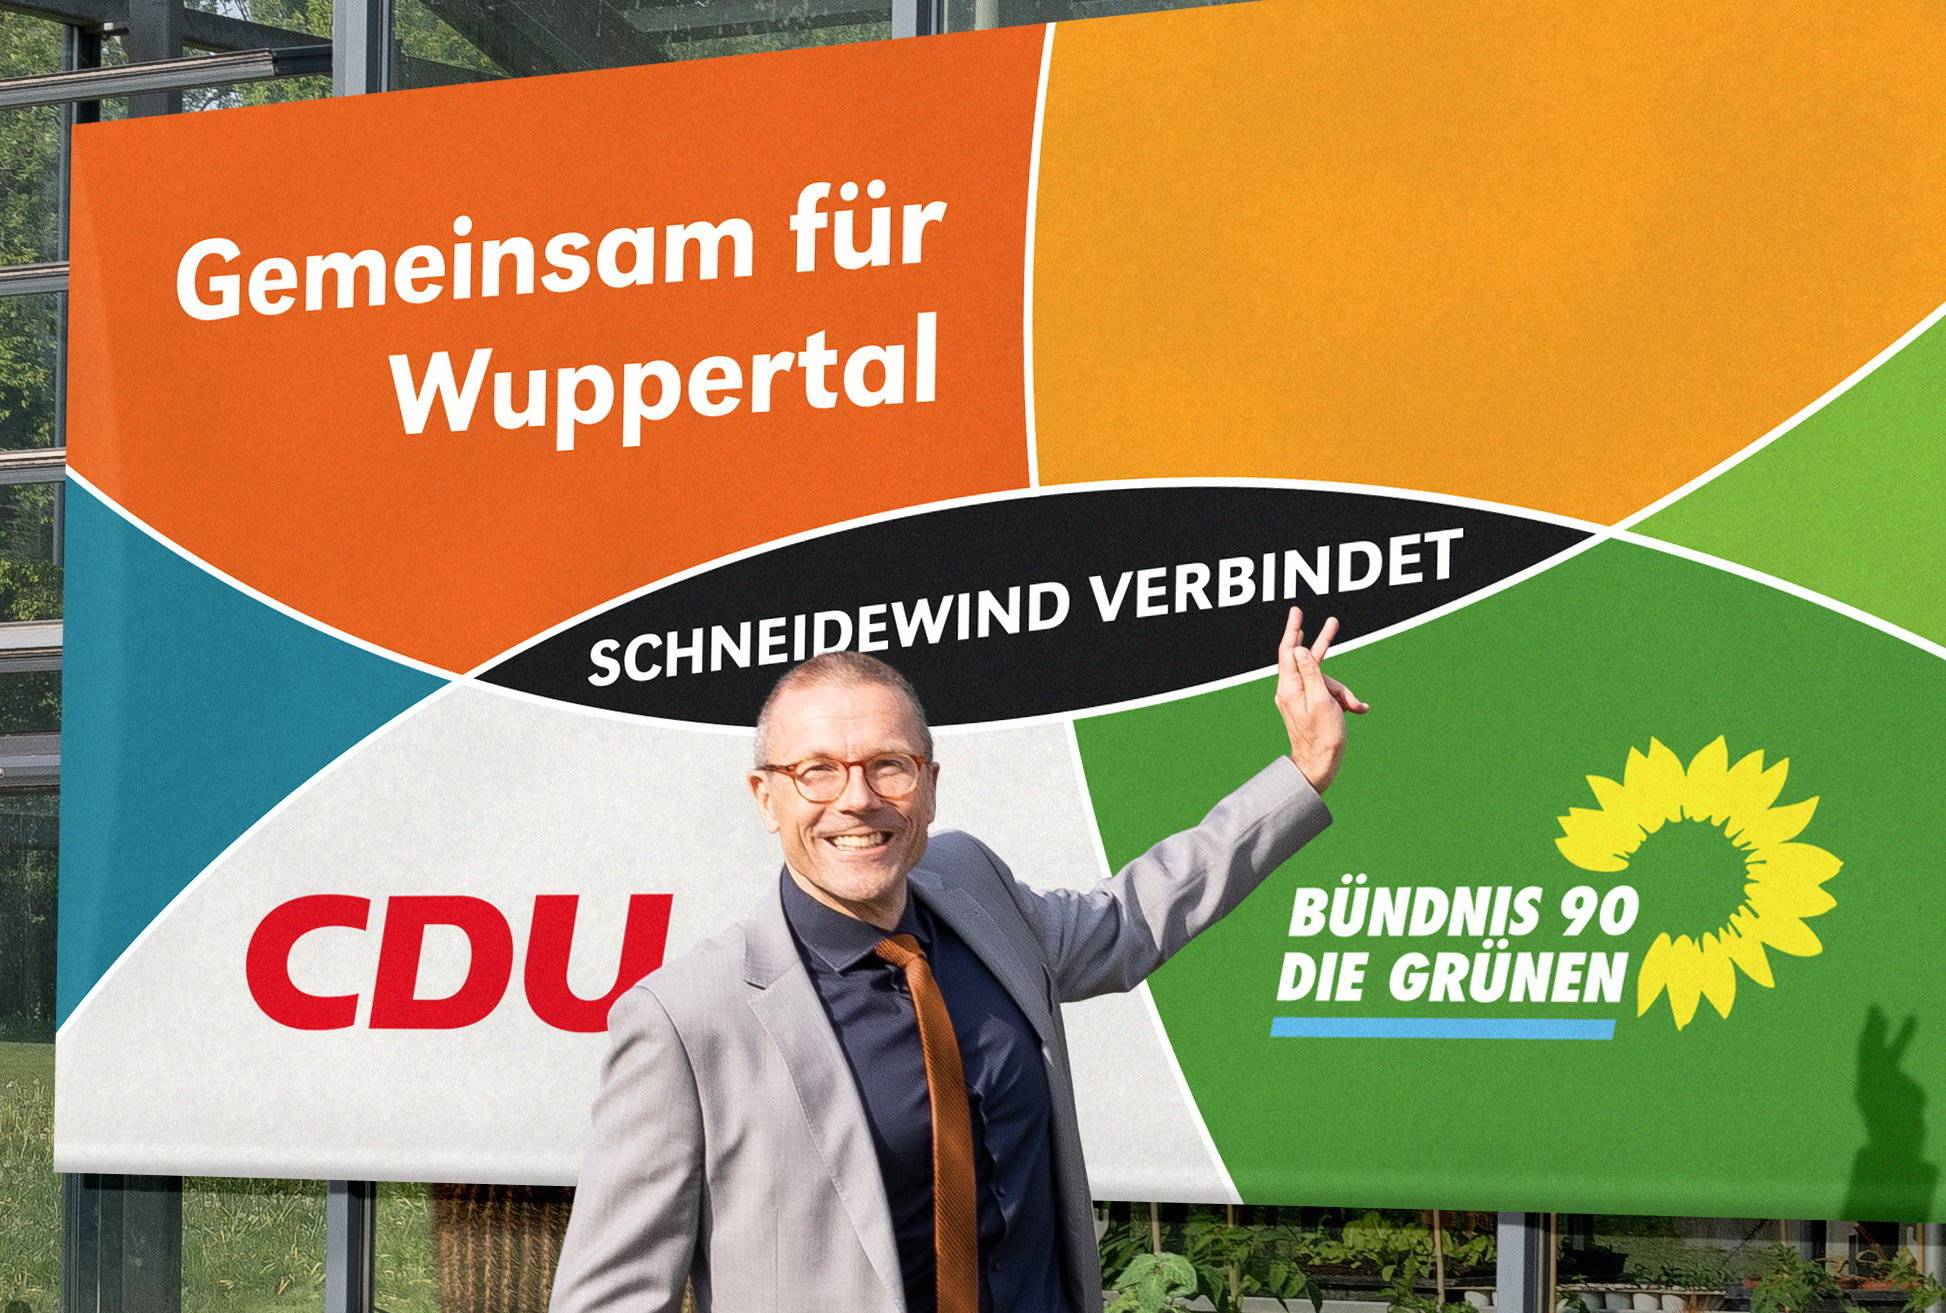  Uwe Schneidewind ist gemeinsamer Kandidat der CDU und der Grünen. 